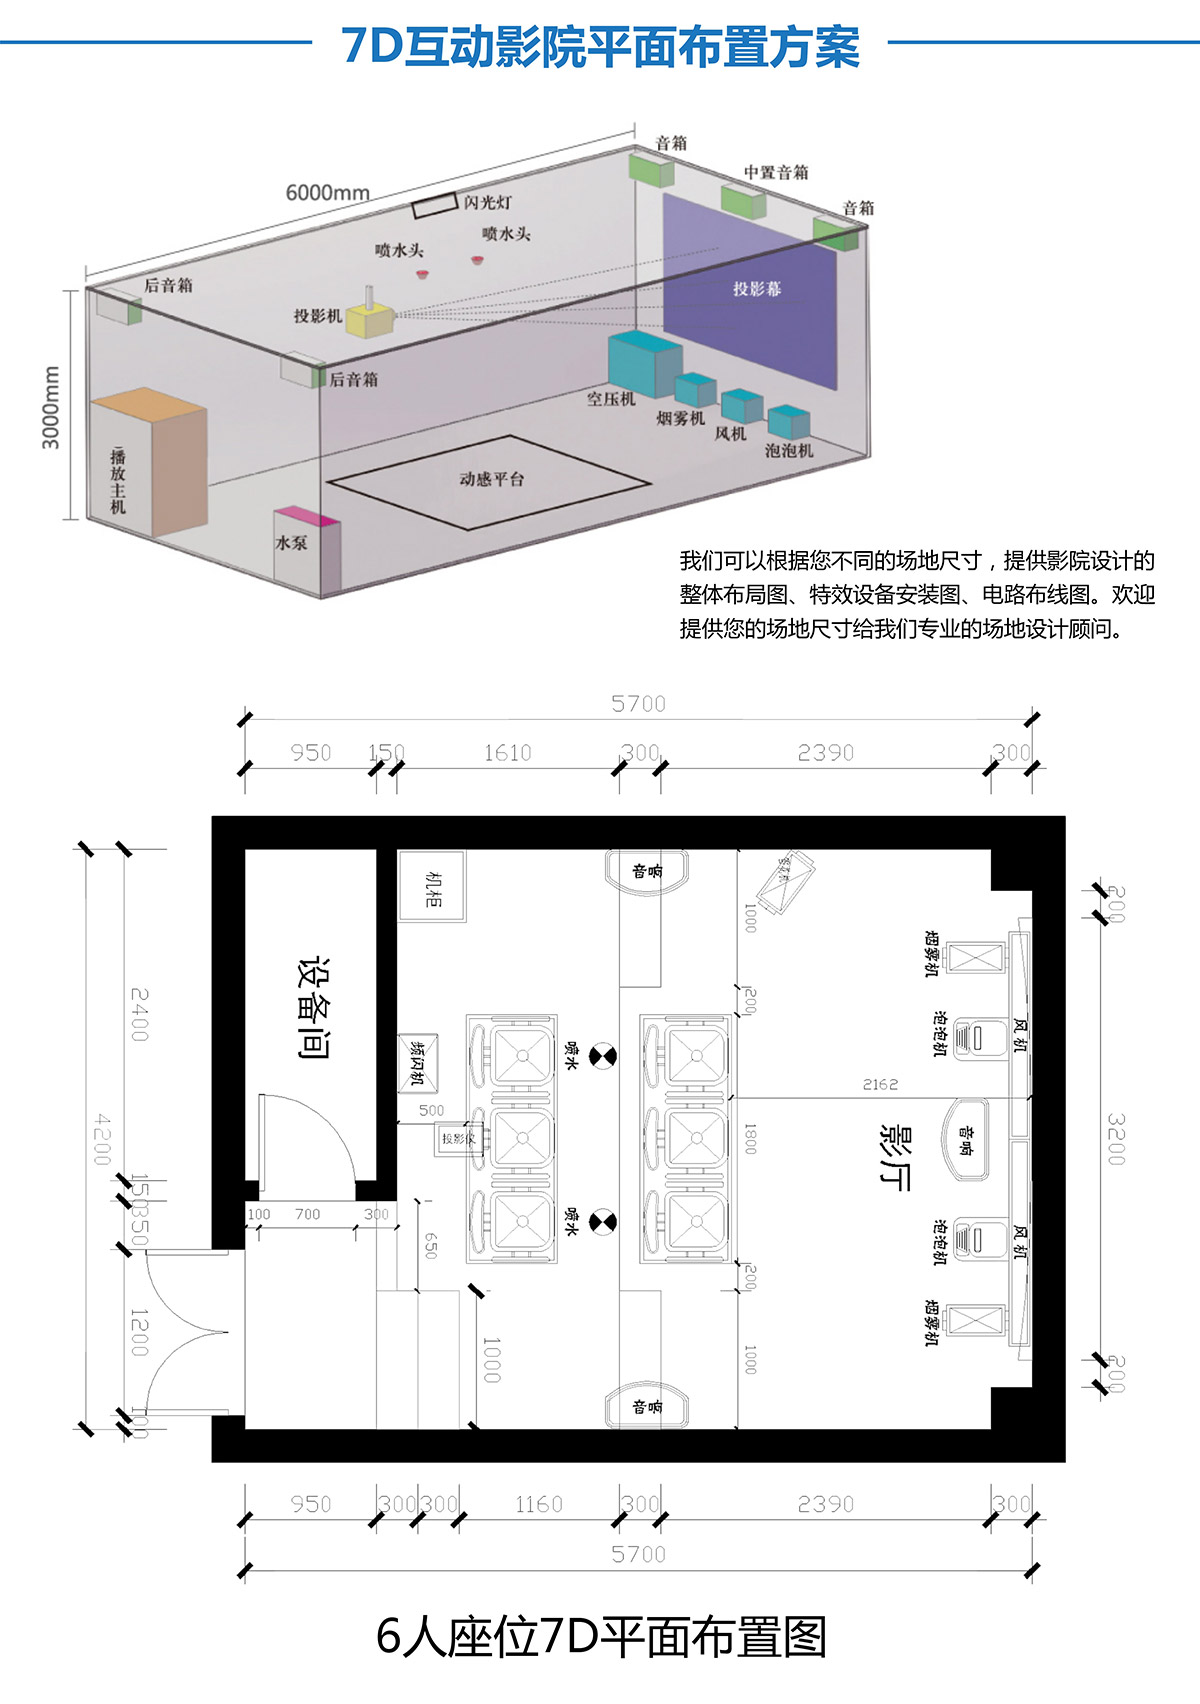 四川7D互动影院平面布置方案.jpg